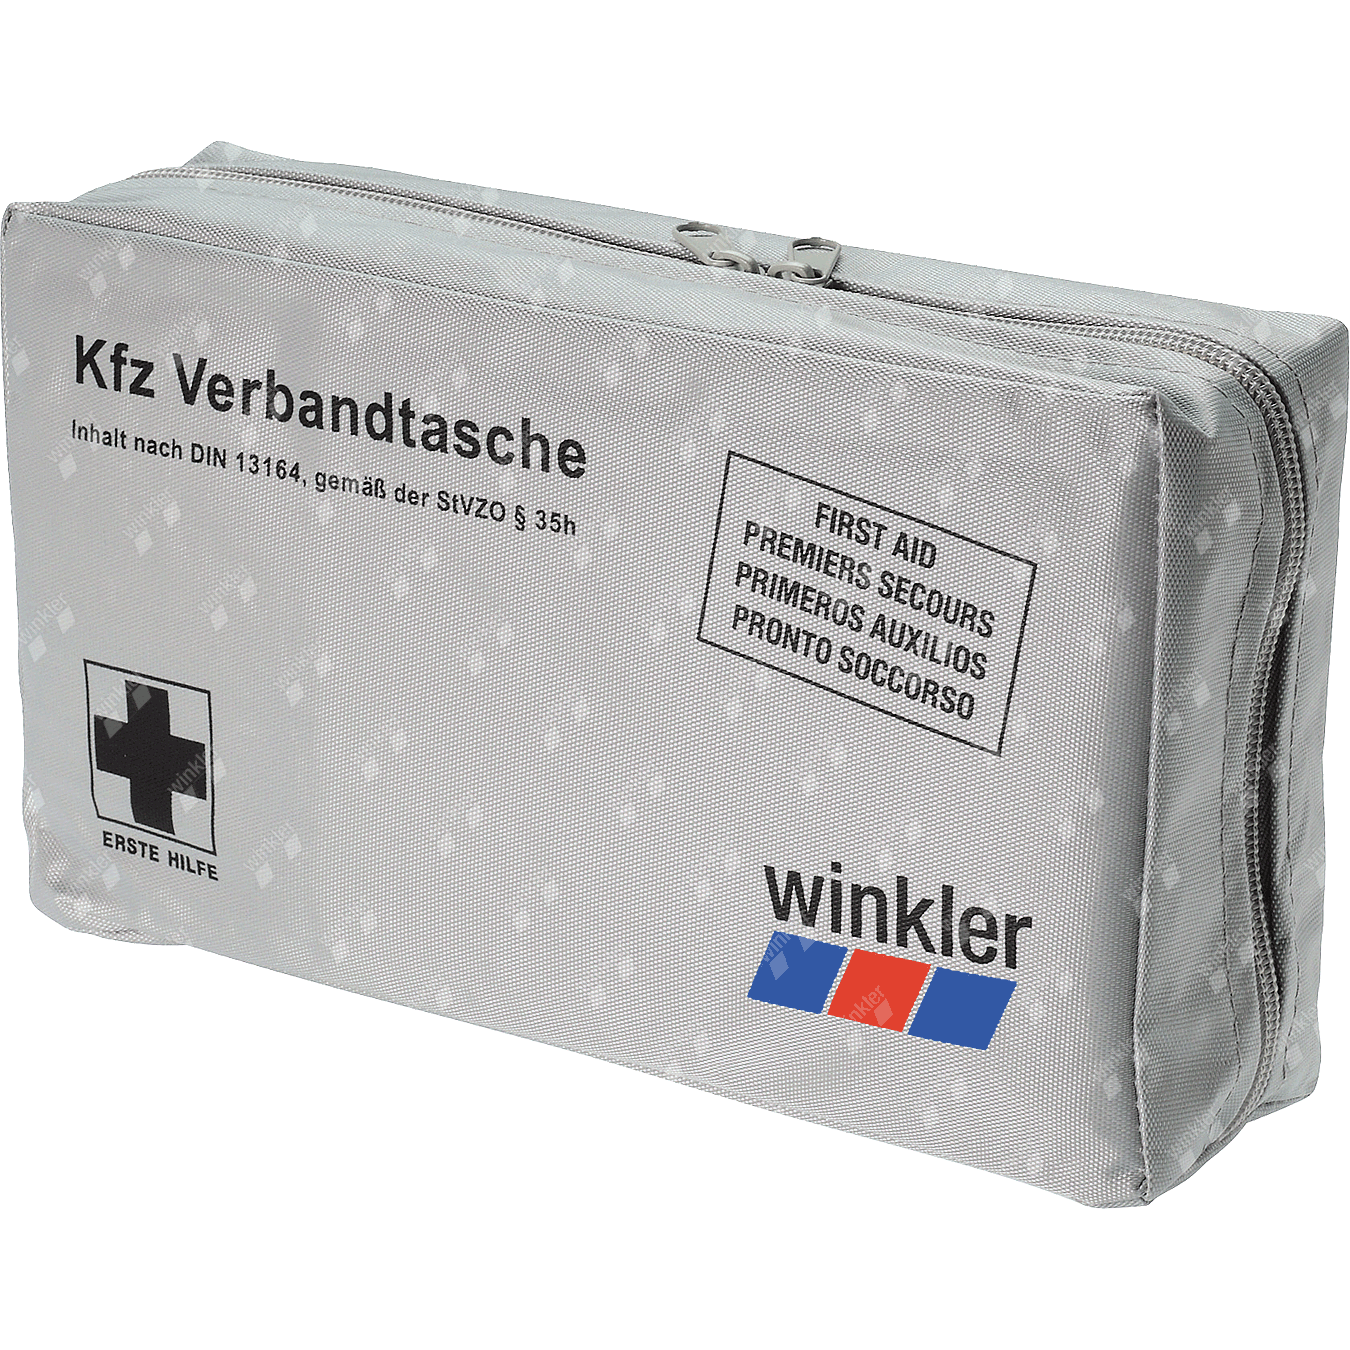 KFZ 17899: KFZ - Verbandtasche mit Warndreieck, DIN 13164 bei reichelt  elektronik